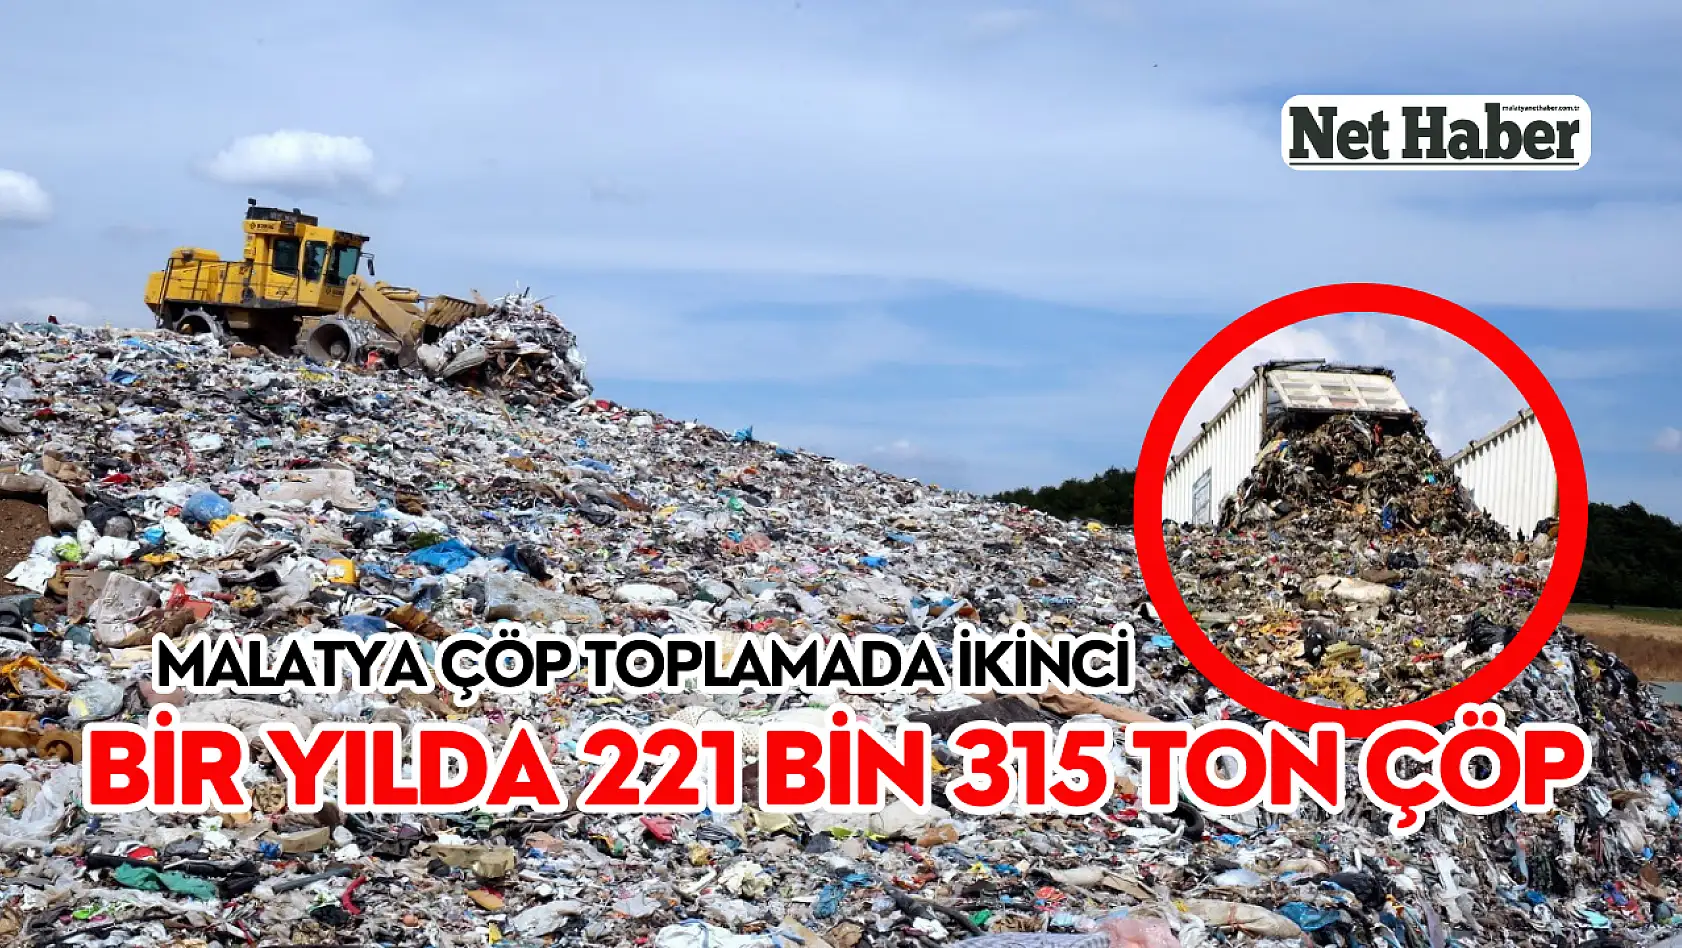 Malatya çöp toplamada ikinci! Bir yılda 221 bin 315 ton çöp